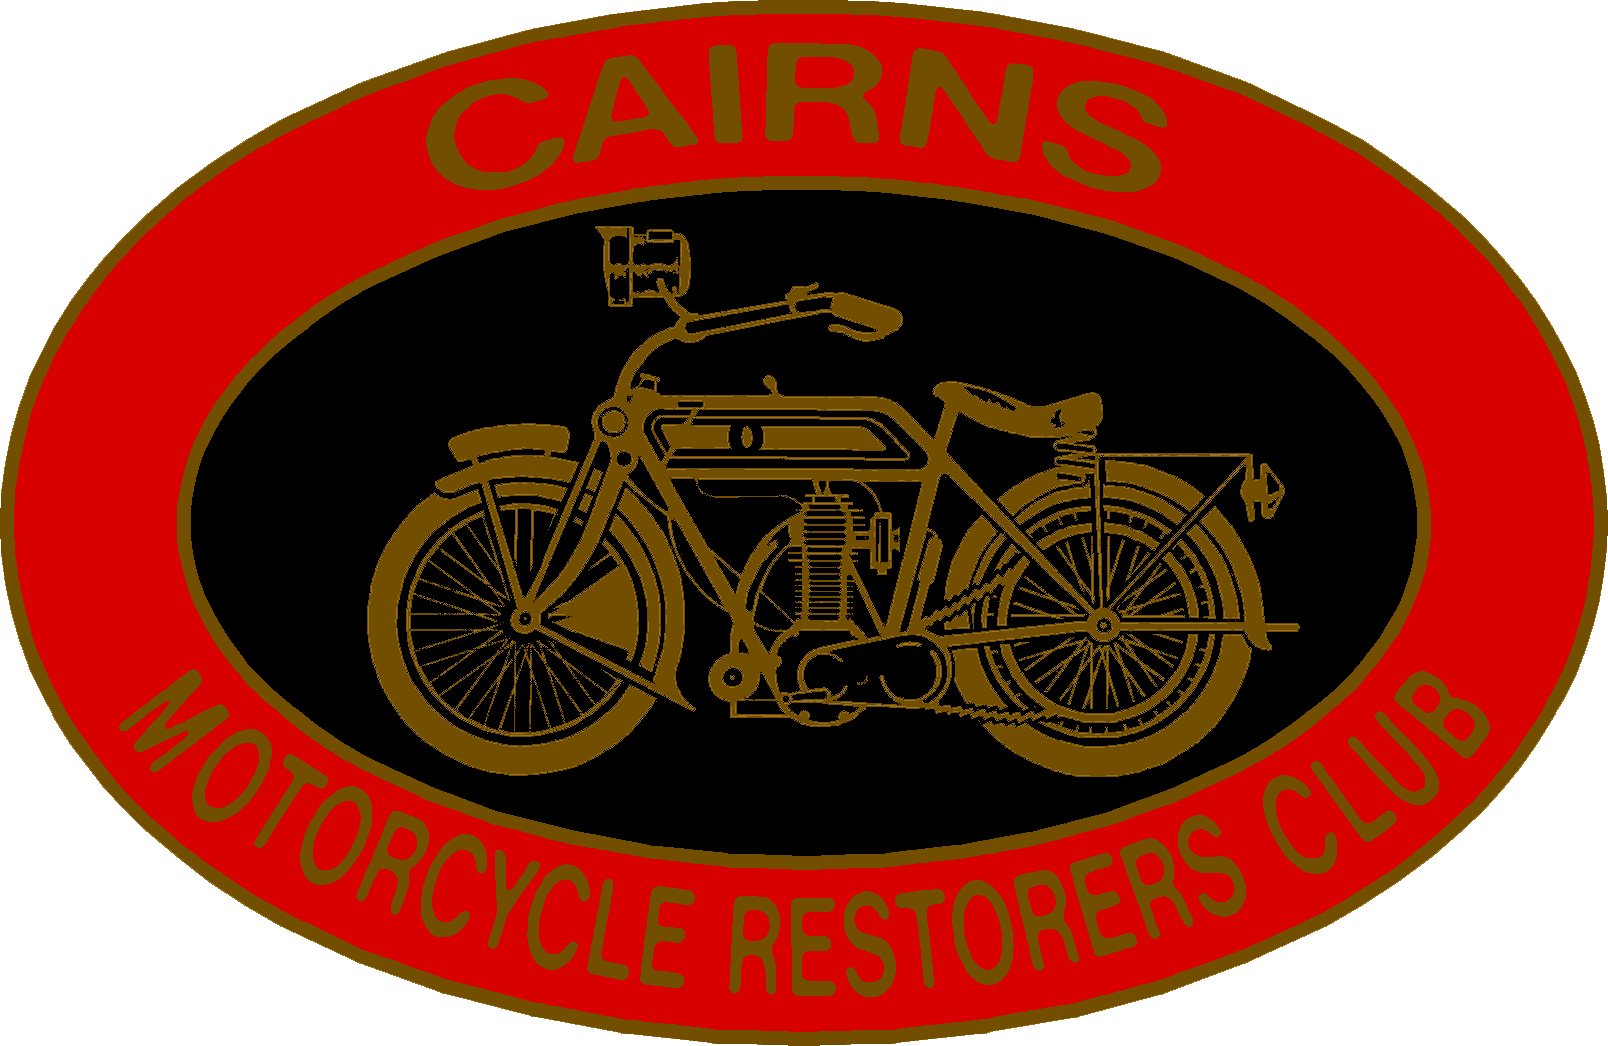 Cairns Motorcycle Restorers Club 